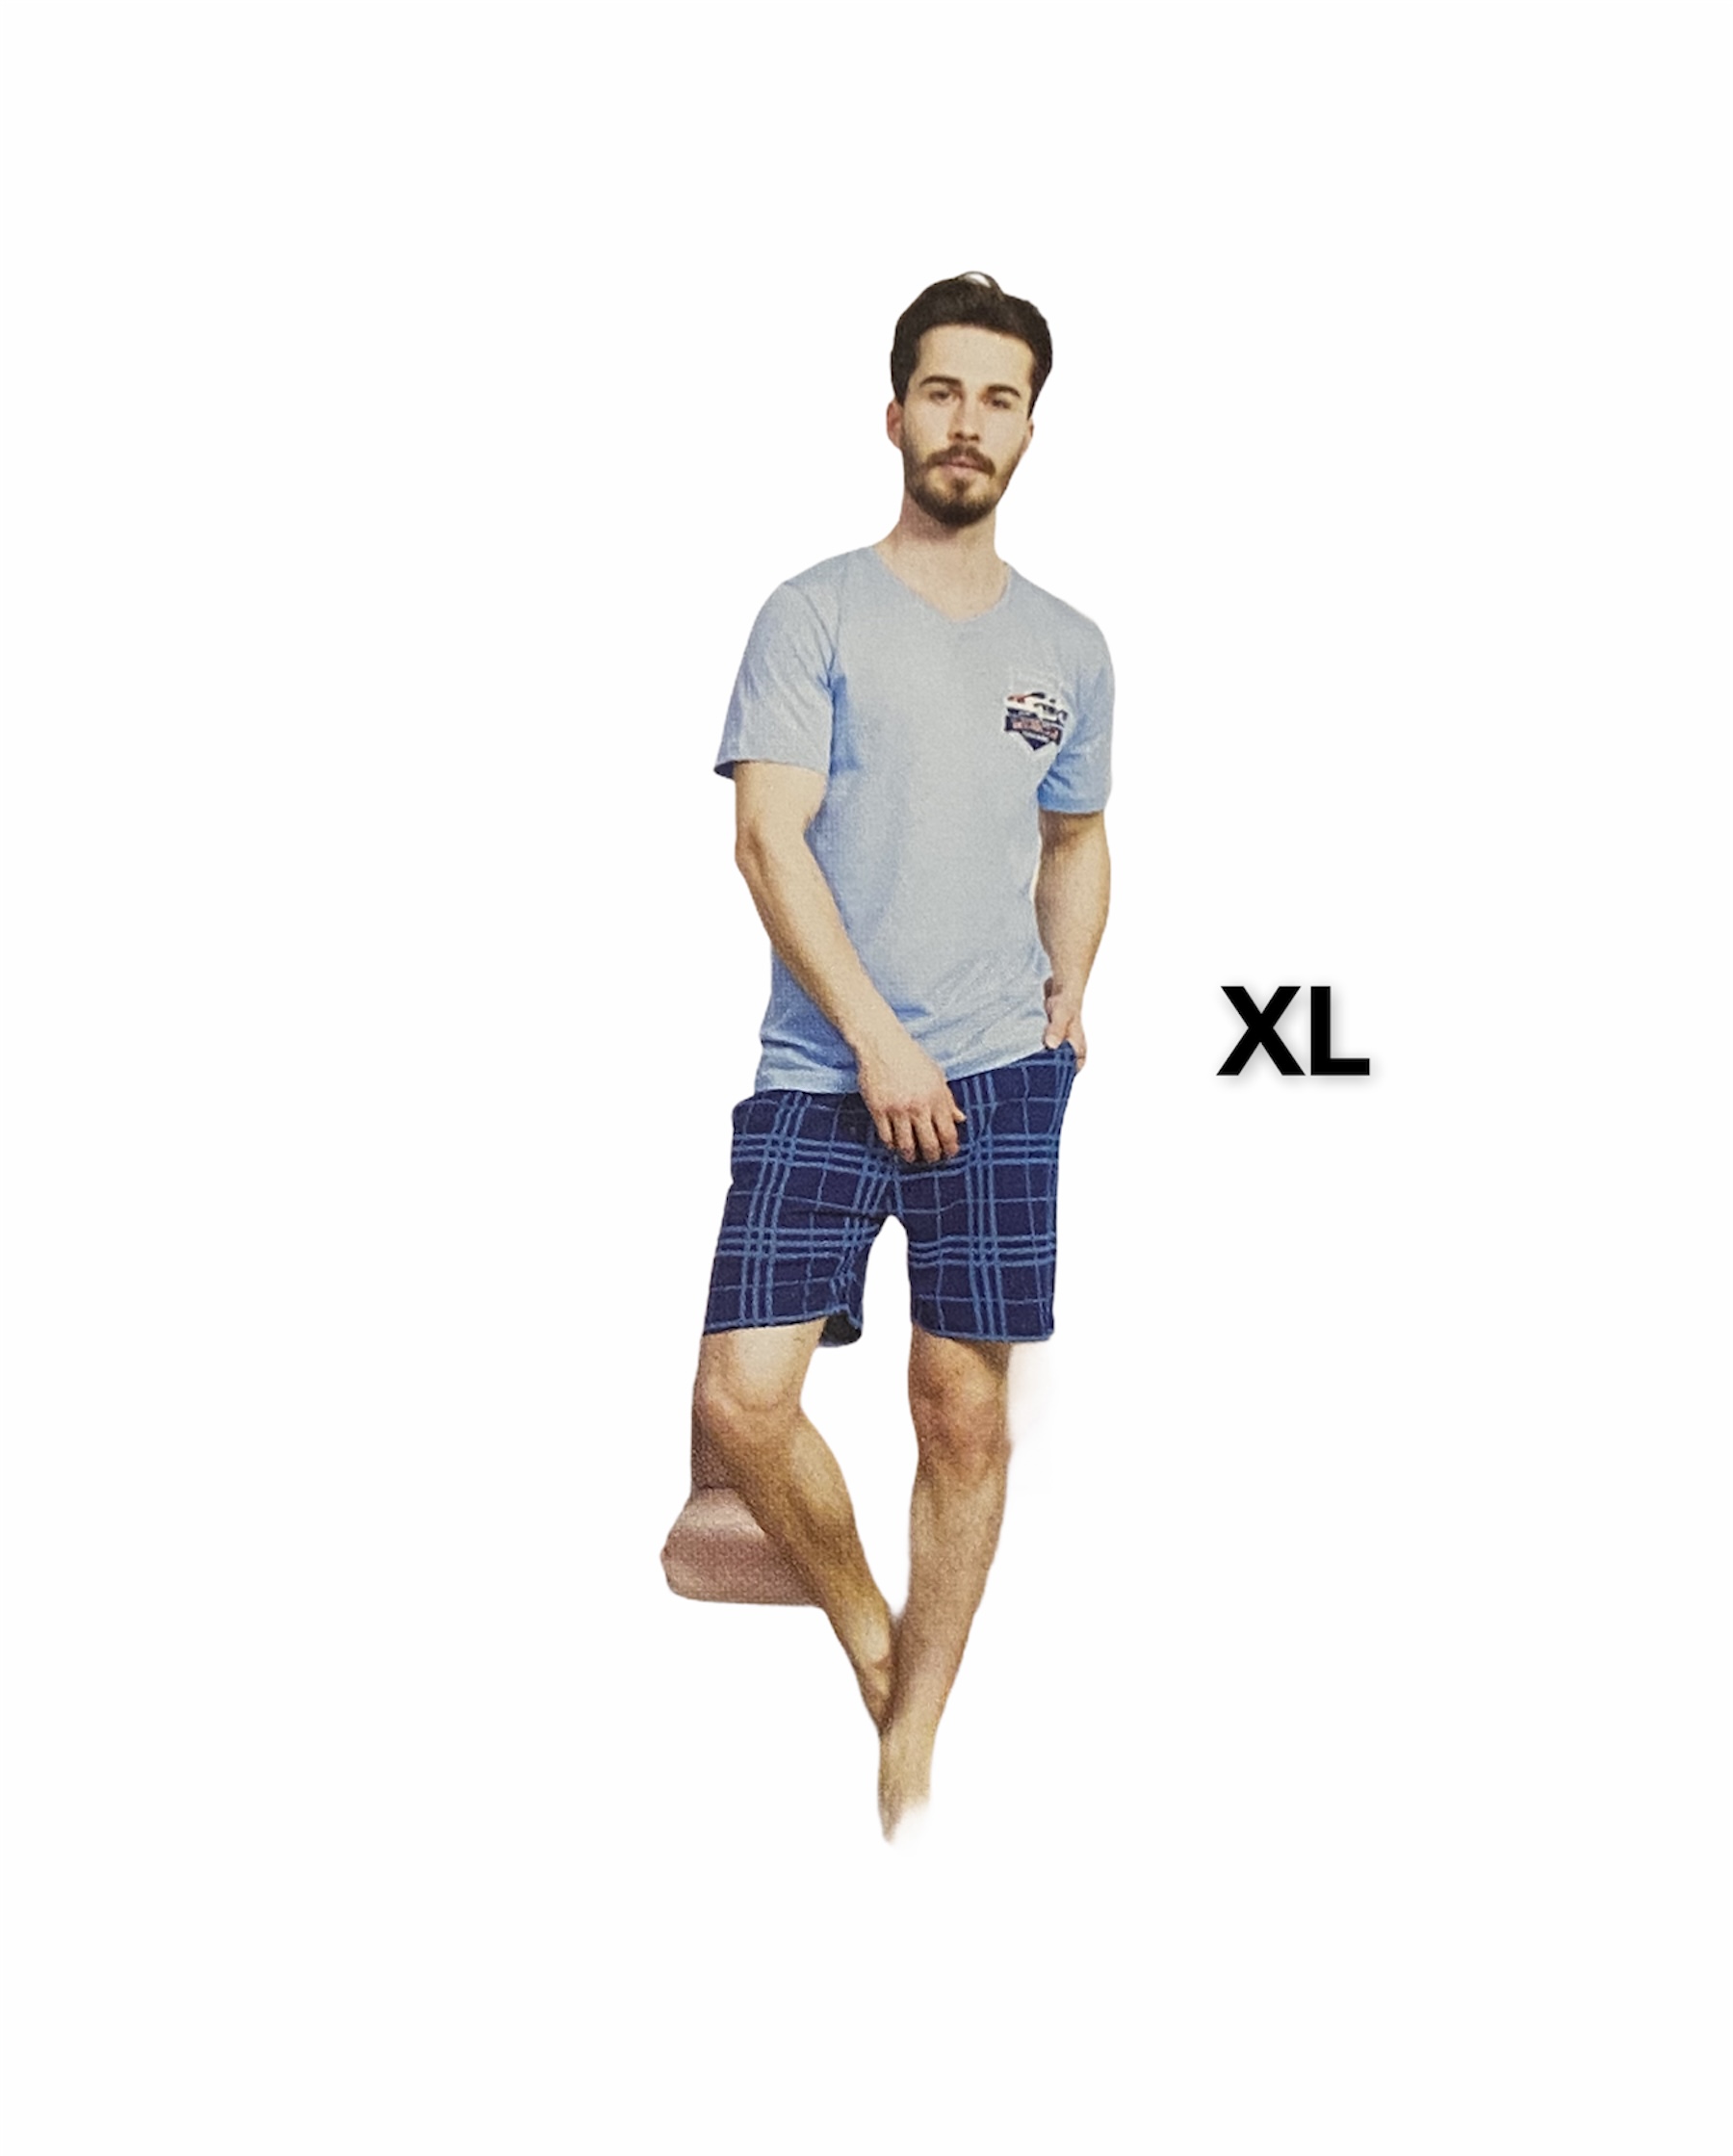 Pánske pyžamo značky Gazzaz, bl.šedá; XL